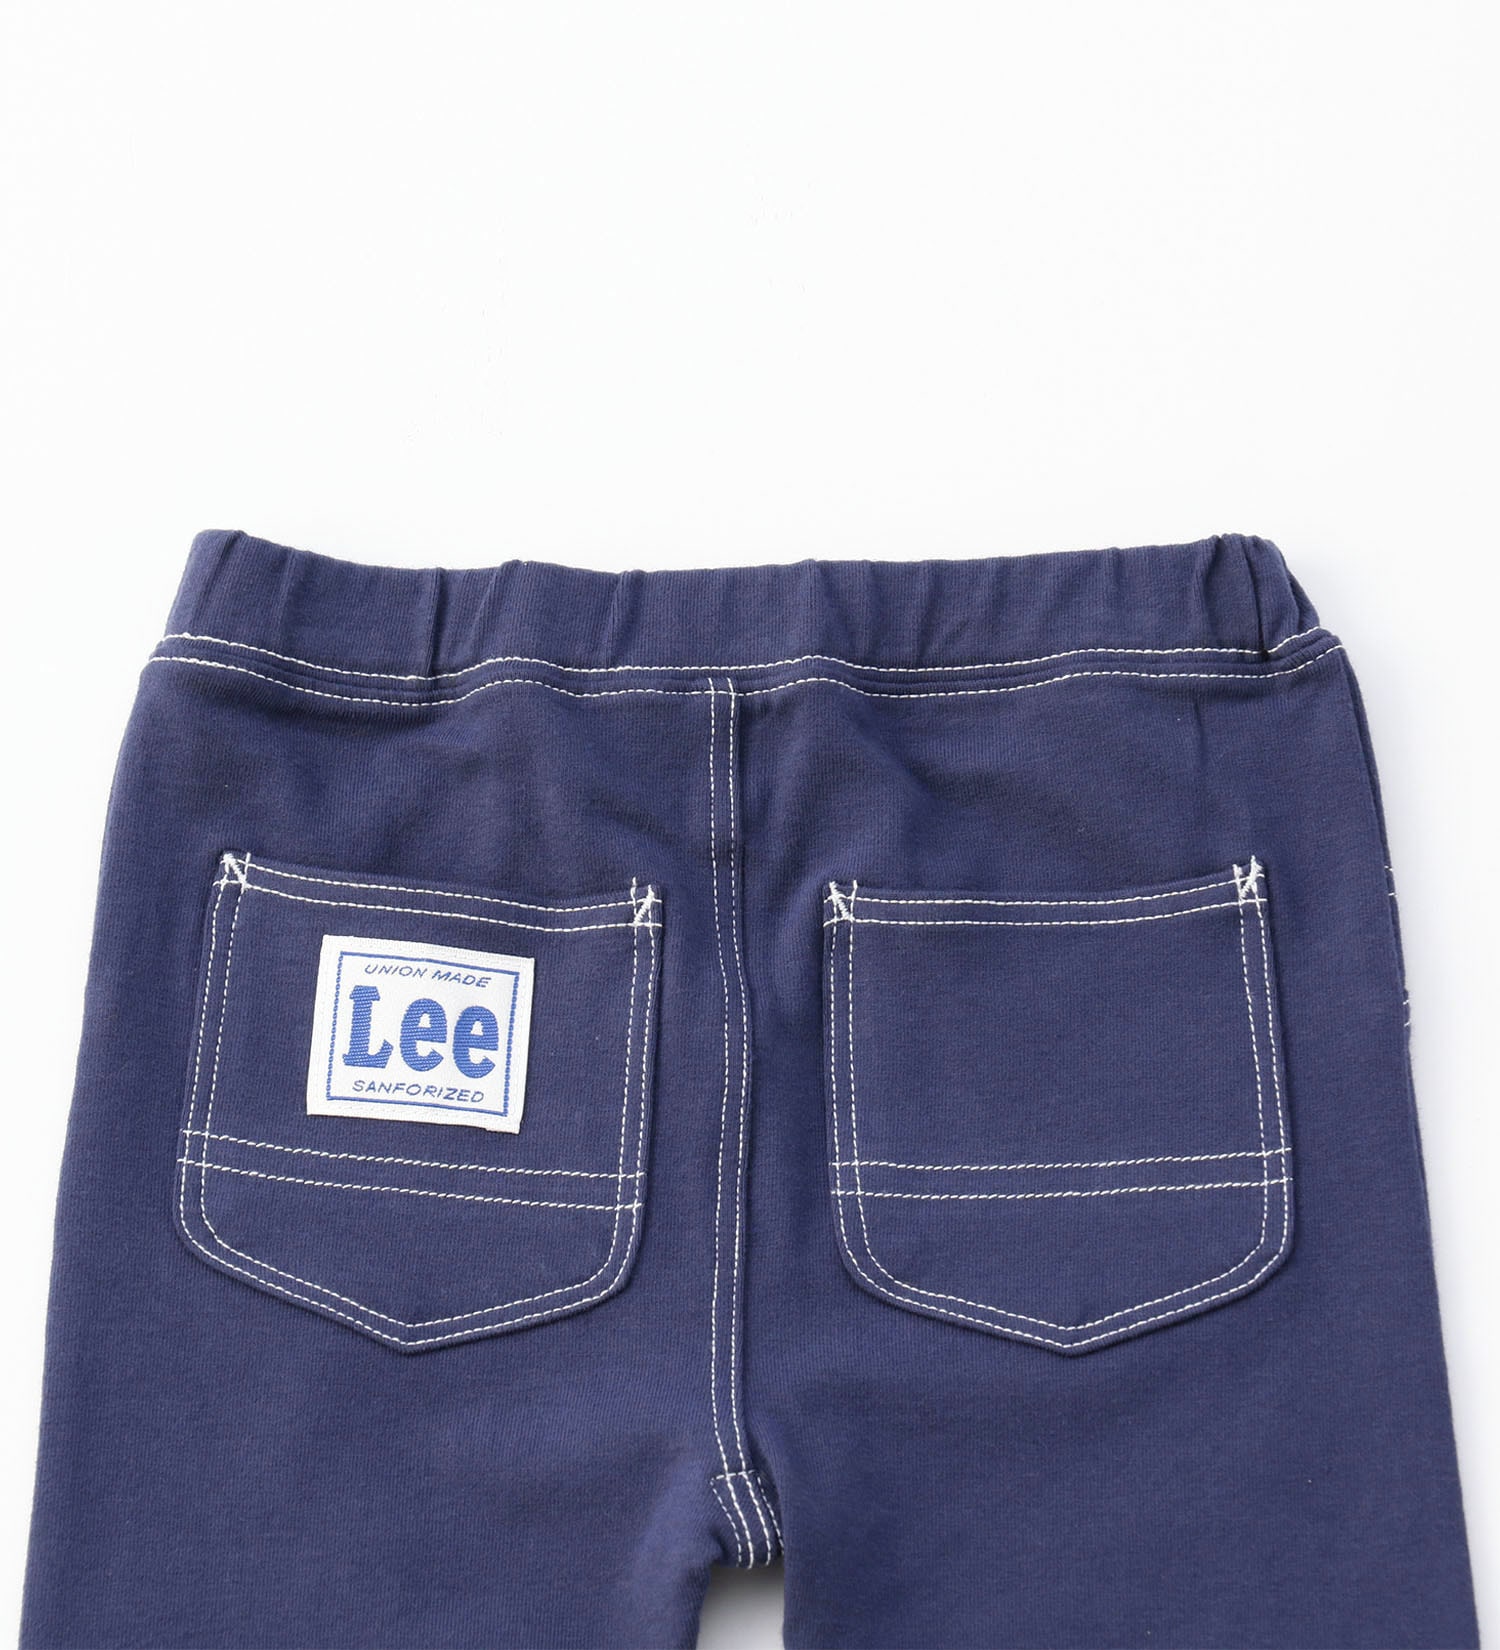 Lee(リー)の【70-100cm】ベビー 柔らかい穿き心地のレギンス|パンツ/パンツ/キッズ|ネイビー